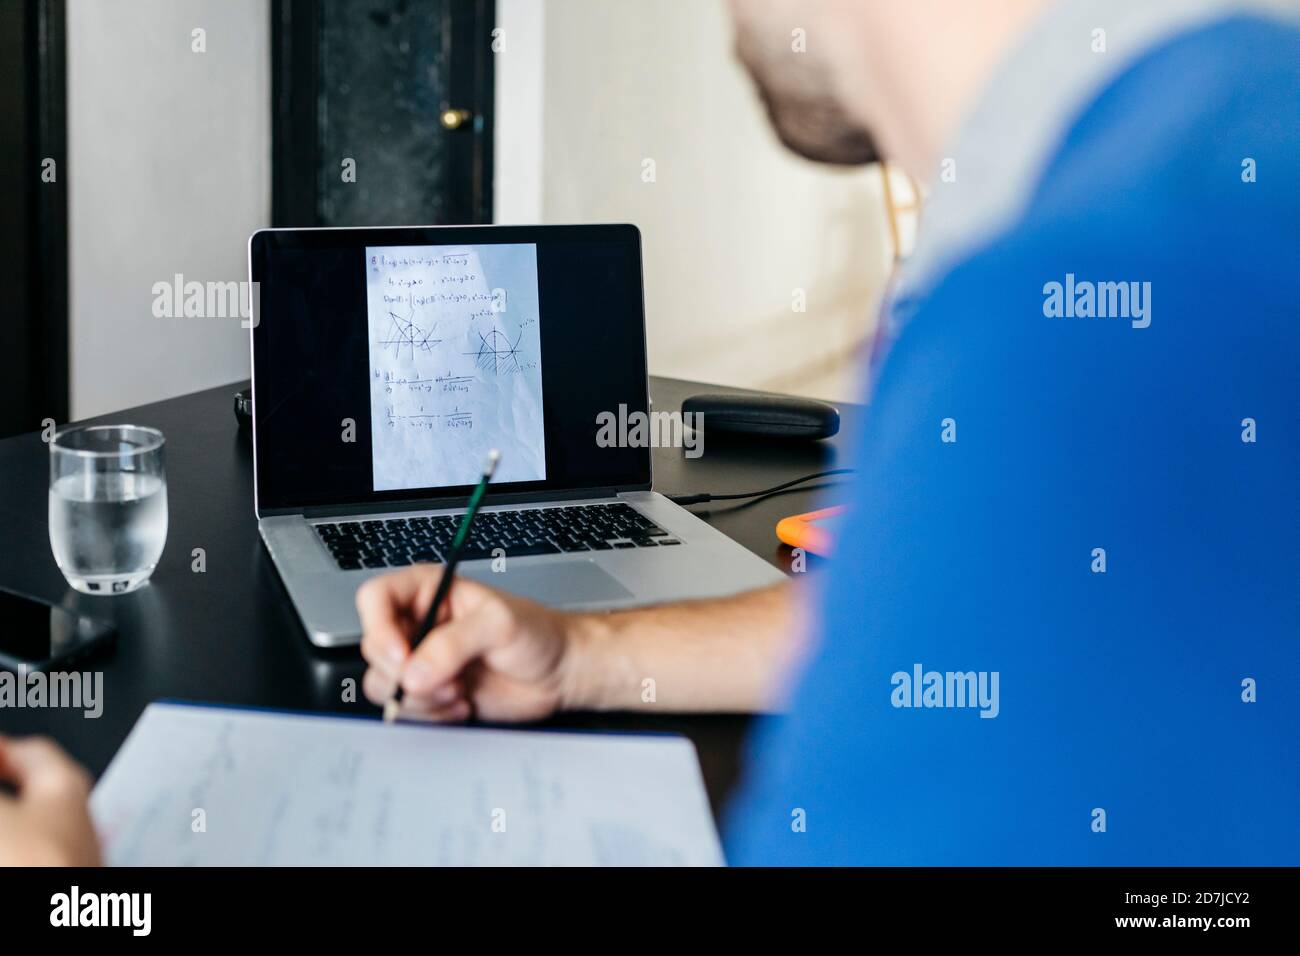 Un étudiant d'université fait ses devoirs de mathématiques sur un ordinateur portable à la maison Banque D'Images